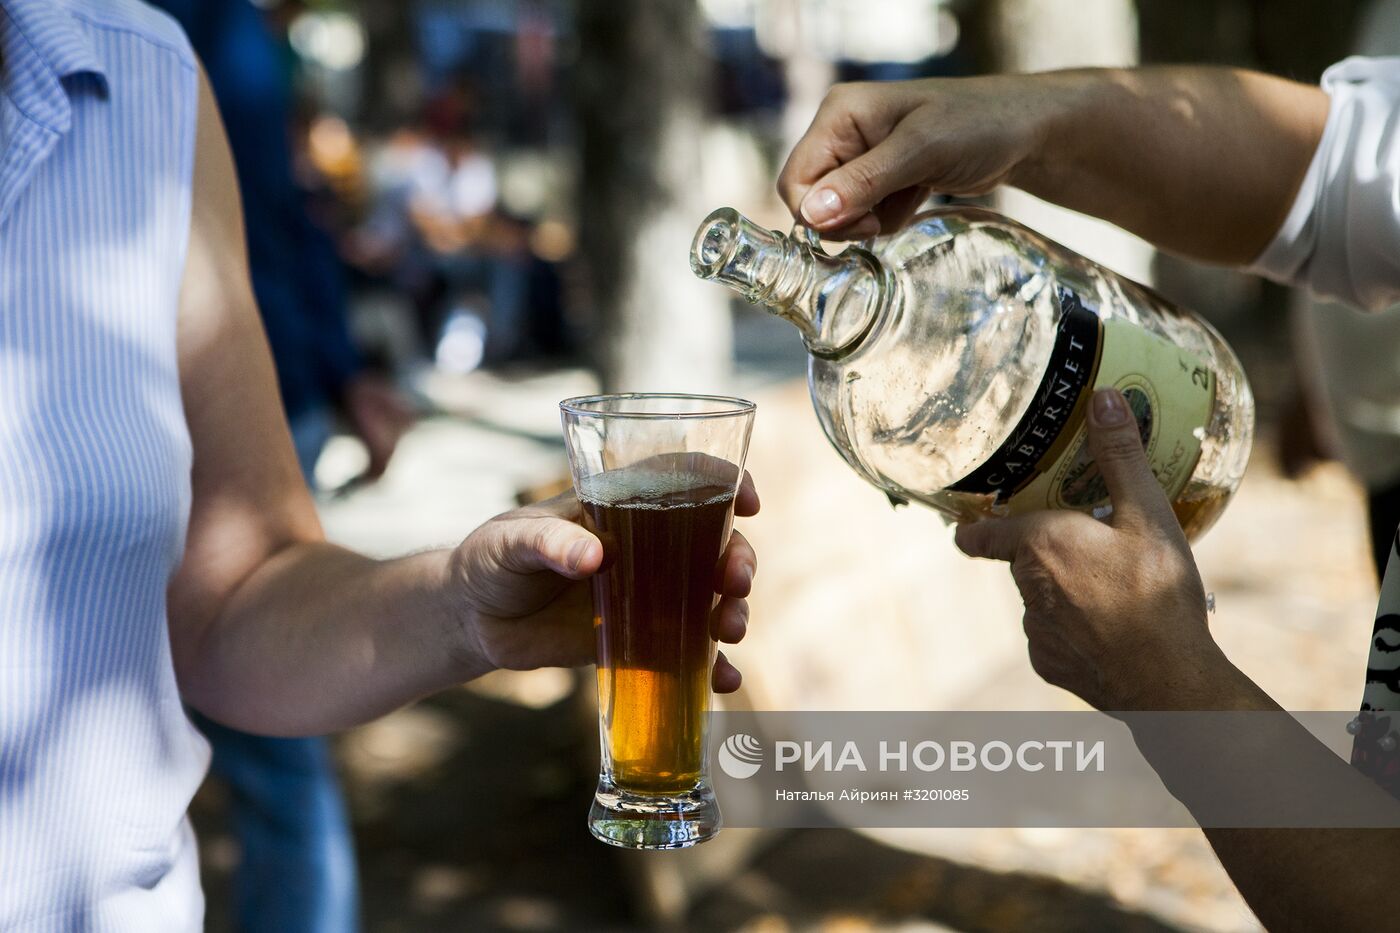 Фестиваль осетинского пива "Ирон баганы-2017" в Южной Осетии